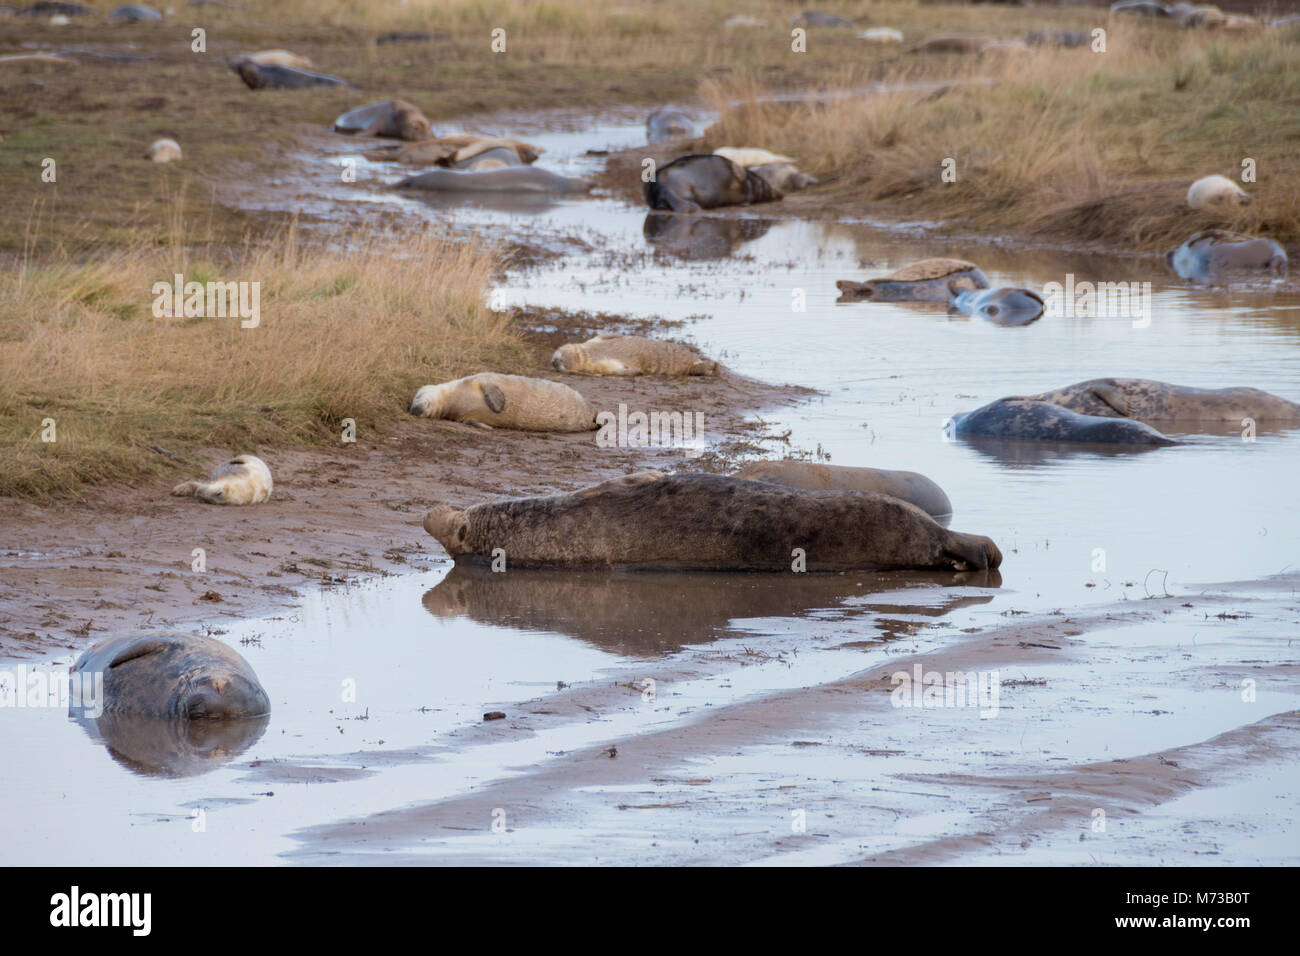 Donna Nook, Lincolnshire, ANGLETERRE - 15 novembre : les phoques gris viennent à terre à la fin de l'automne pour la saison de naissance le 15 novembre 2016 à Donna Nook Santuary, Lincolnsh joint Banque D'Images